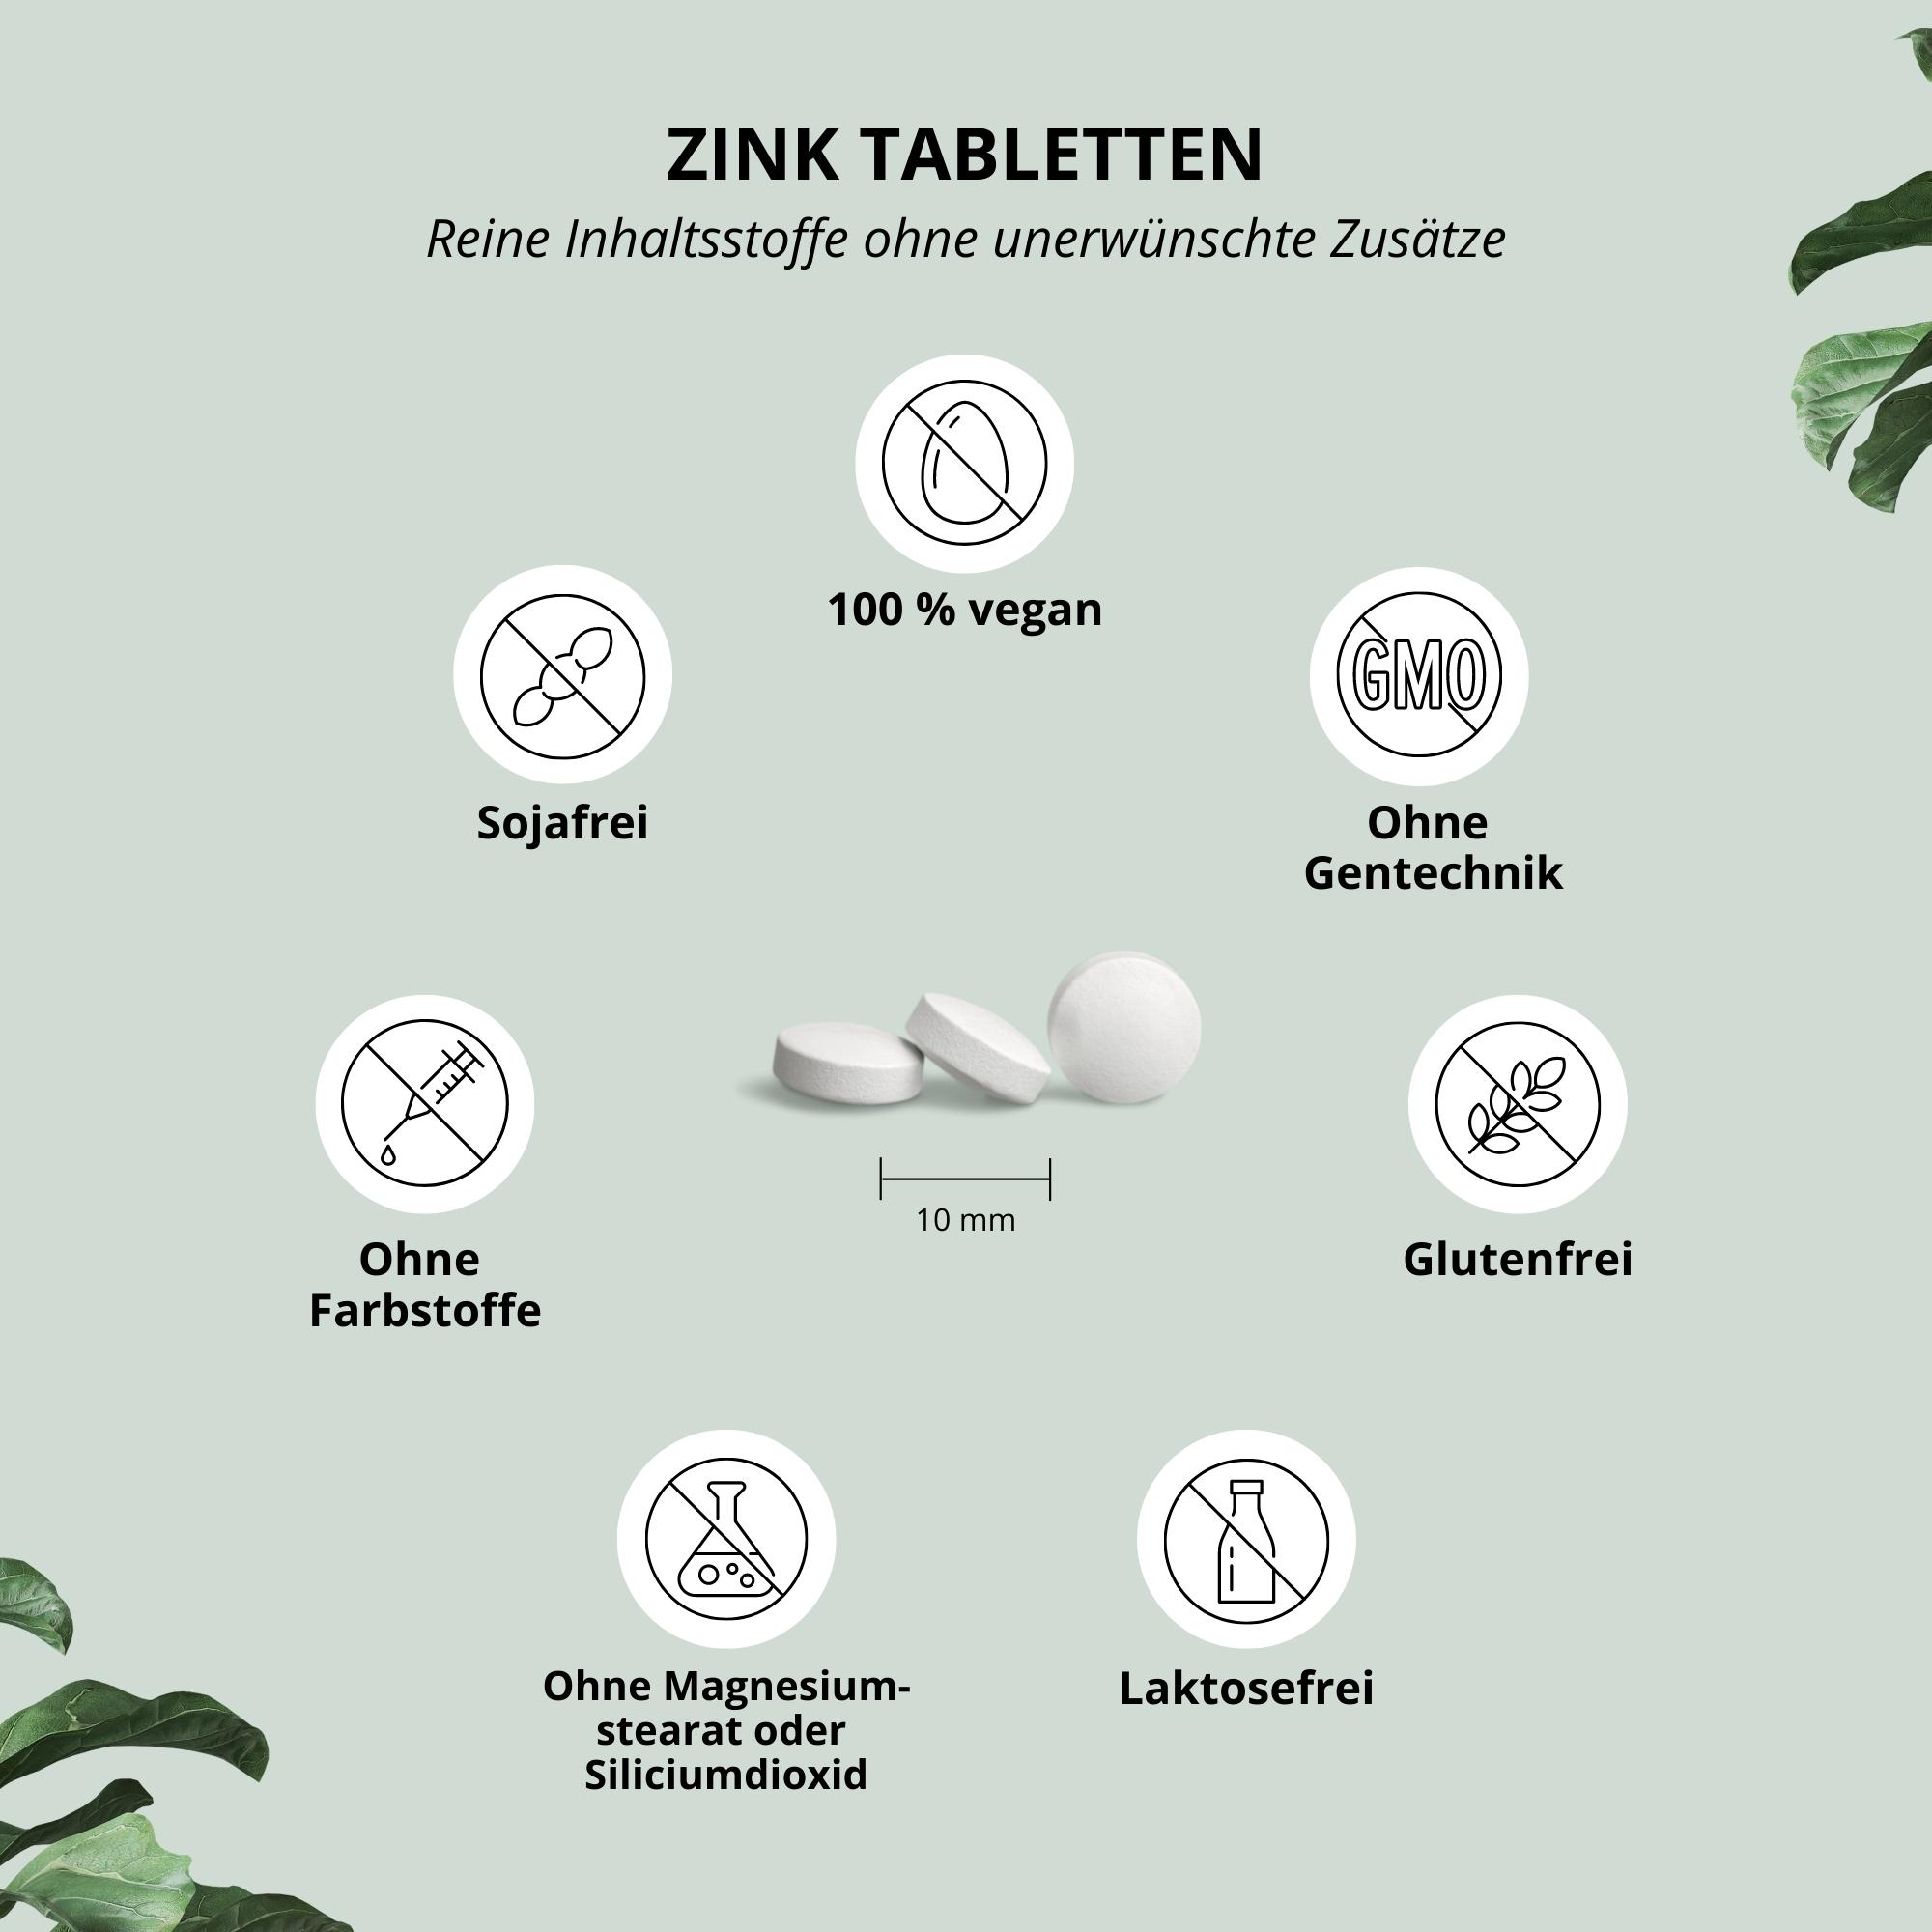 Zinc tablets